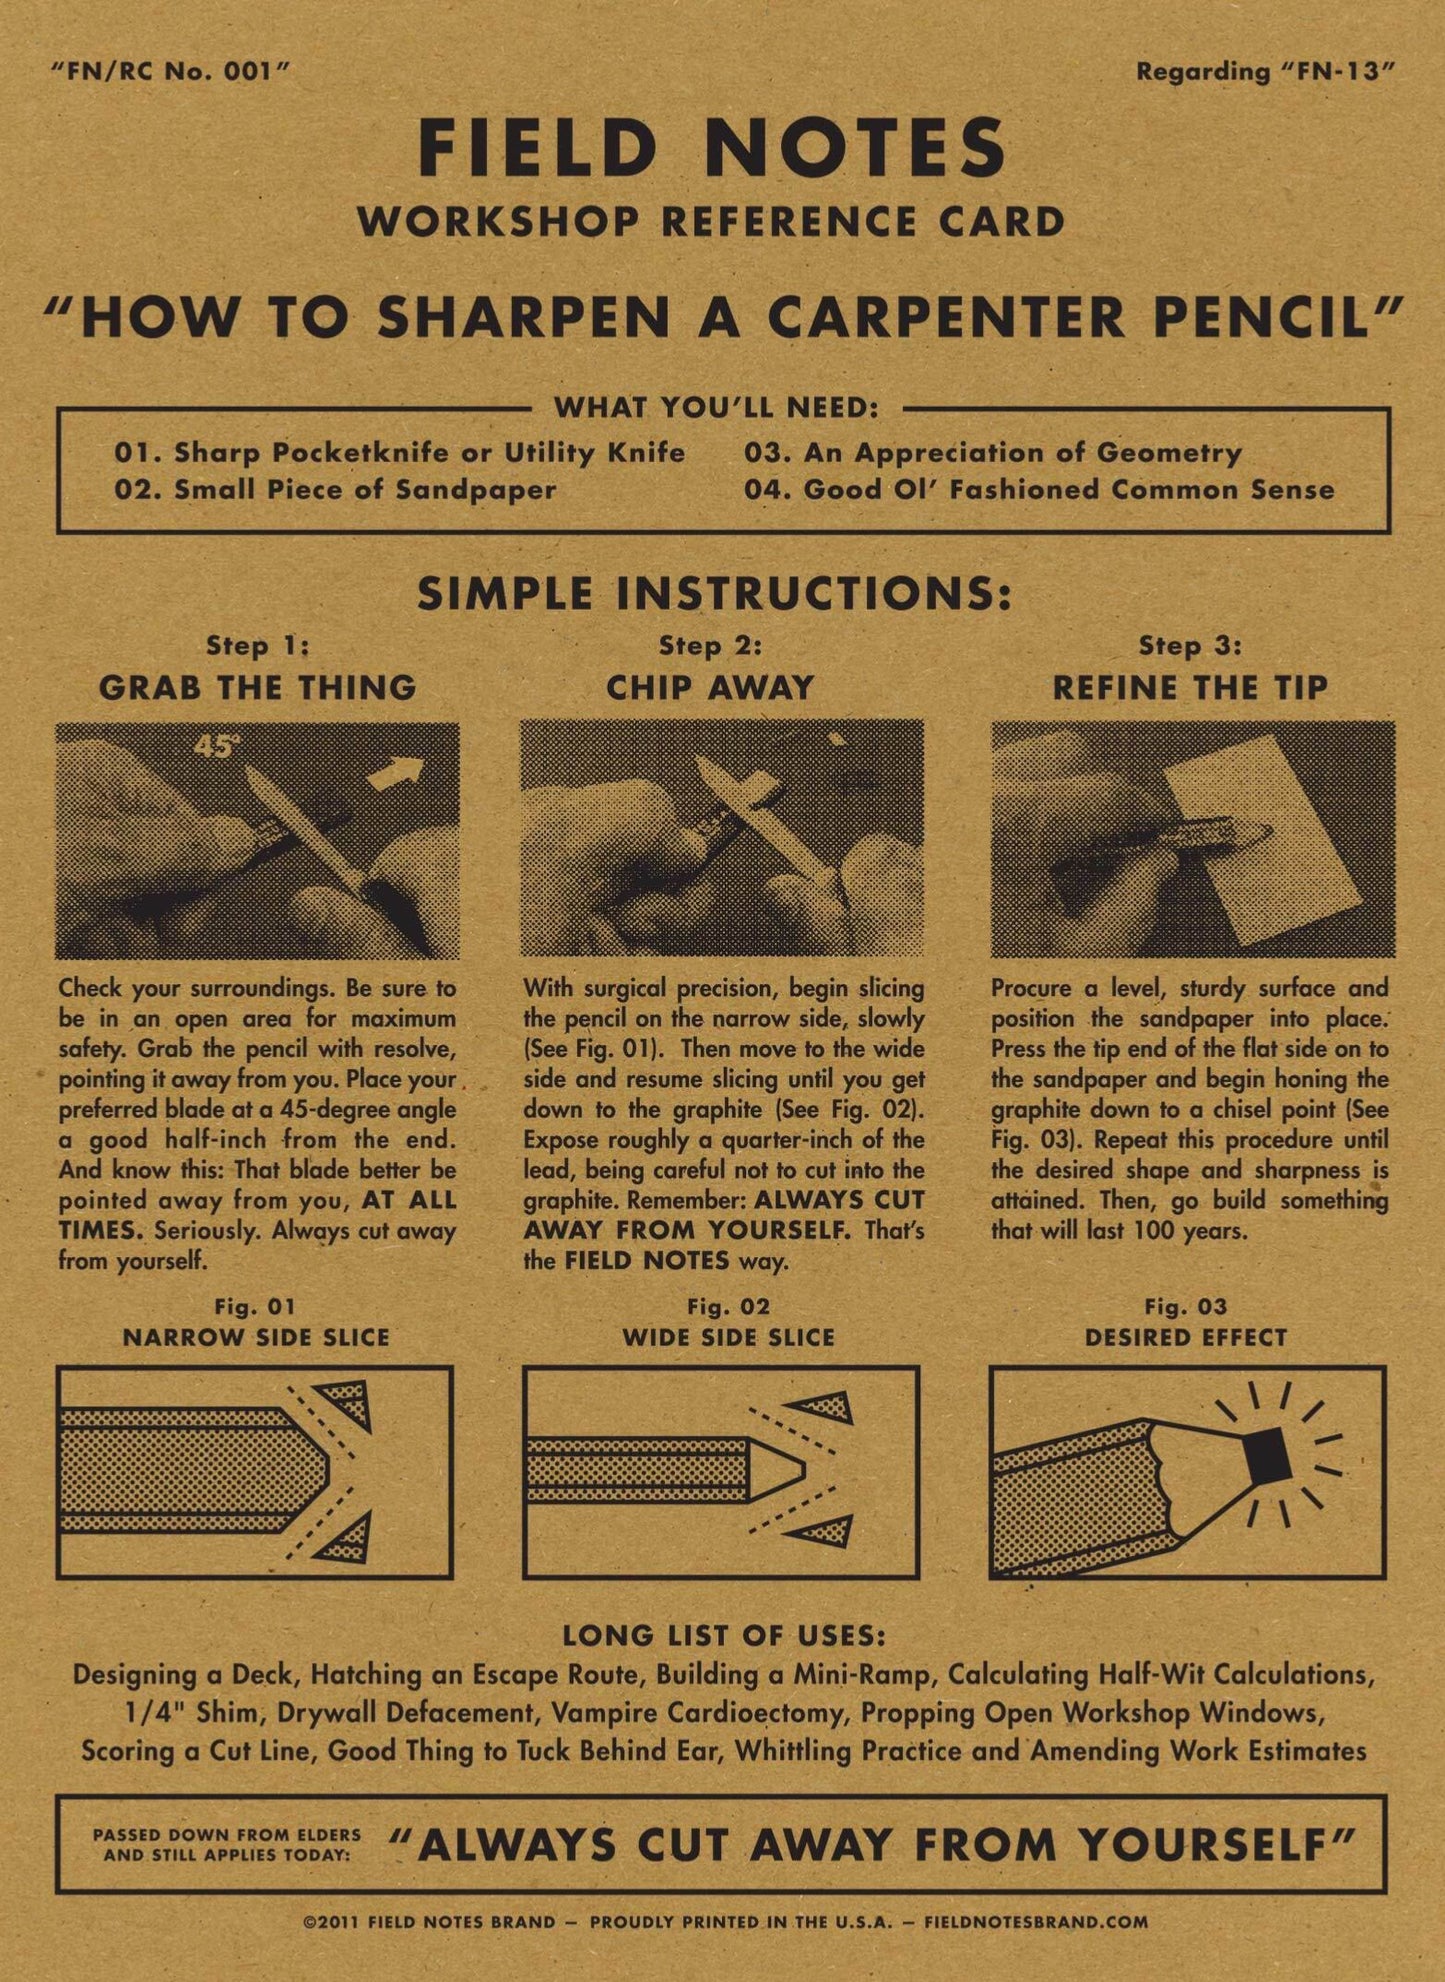 
                  
                    Carpenter Pencil 3-Pack
                  
                